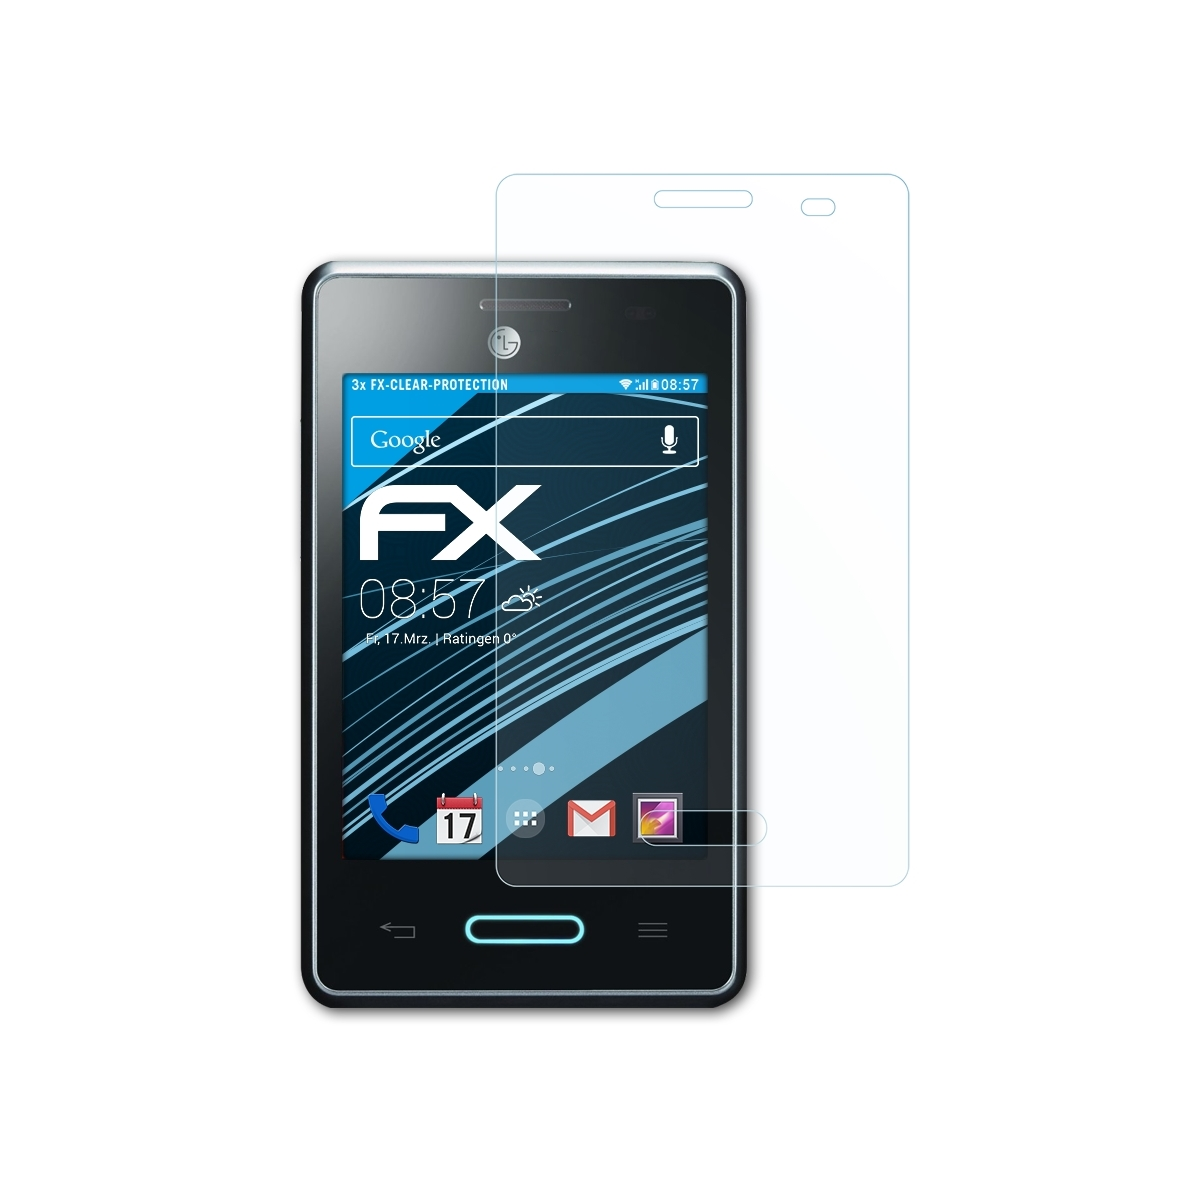 ATFOLIX 3x FX-Clear II (E430)) Optimus LG Displayschutz(für L3